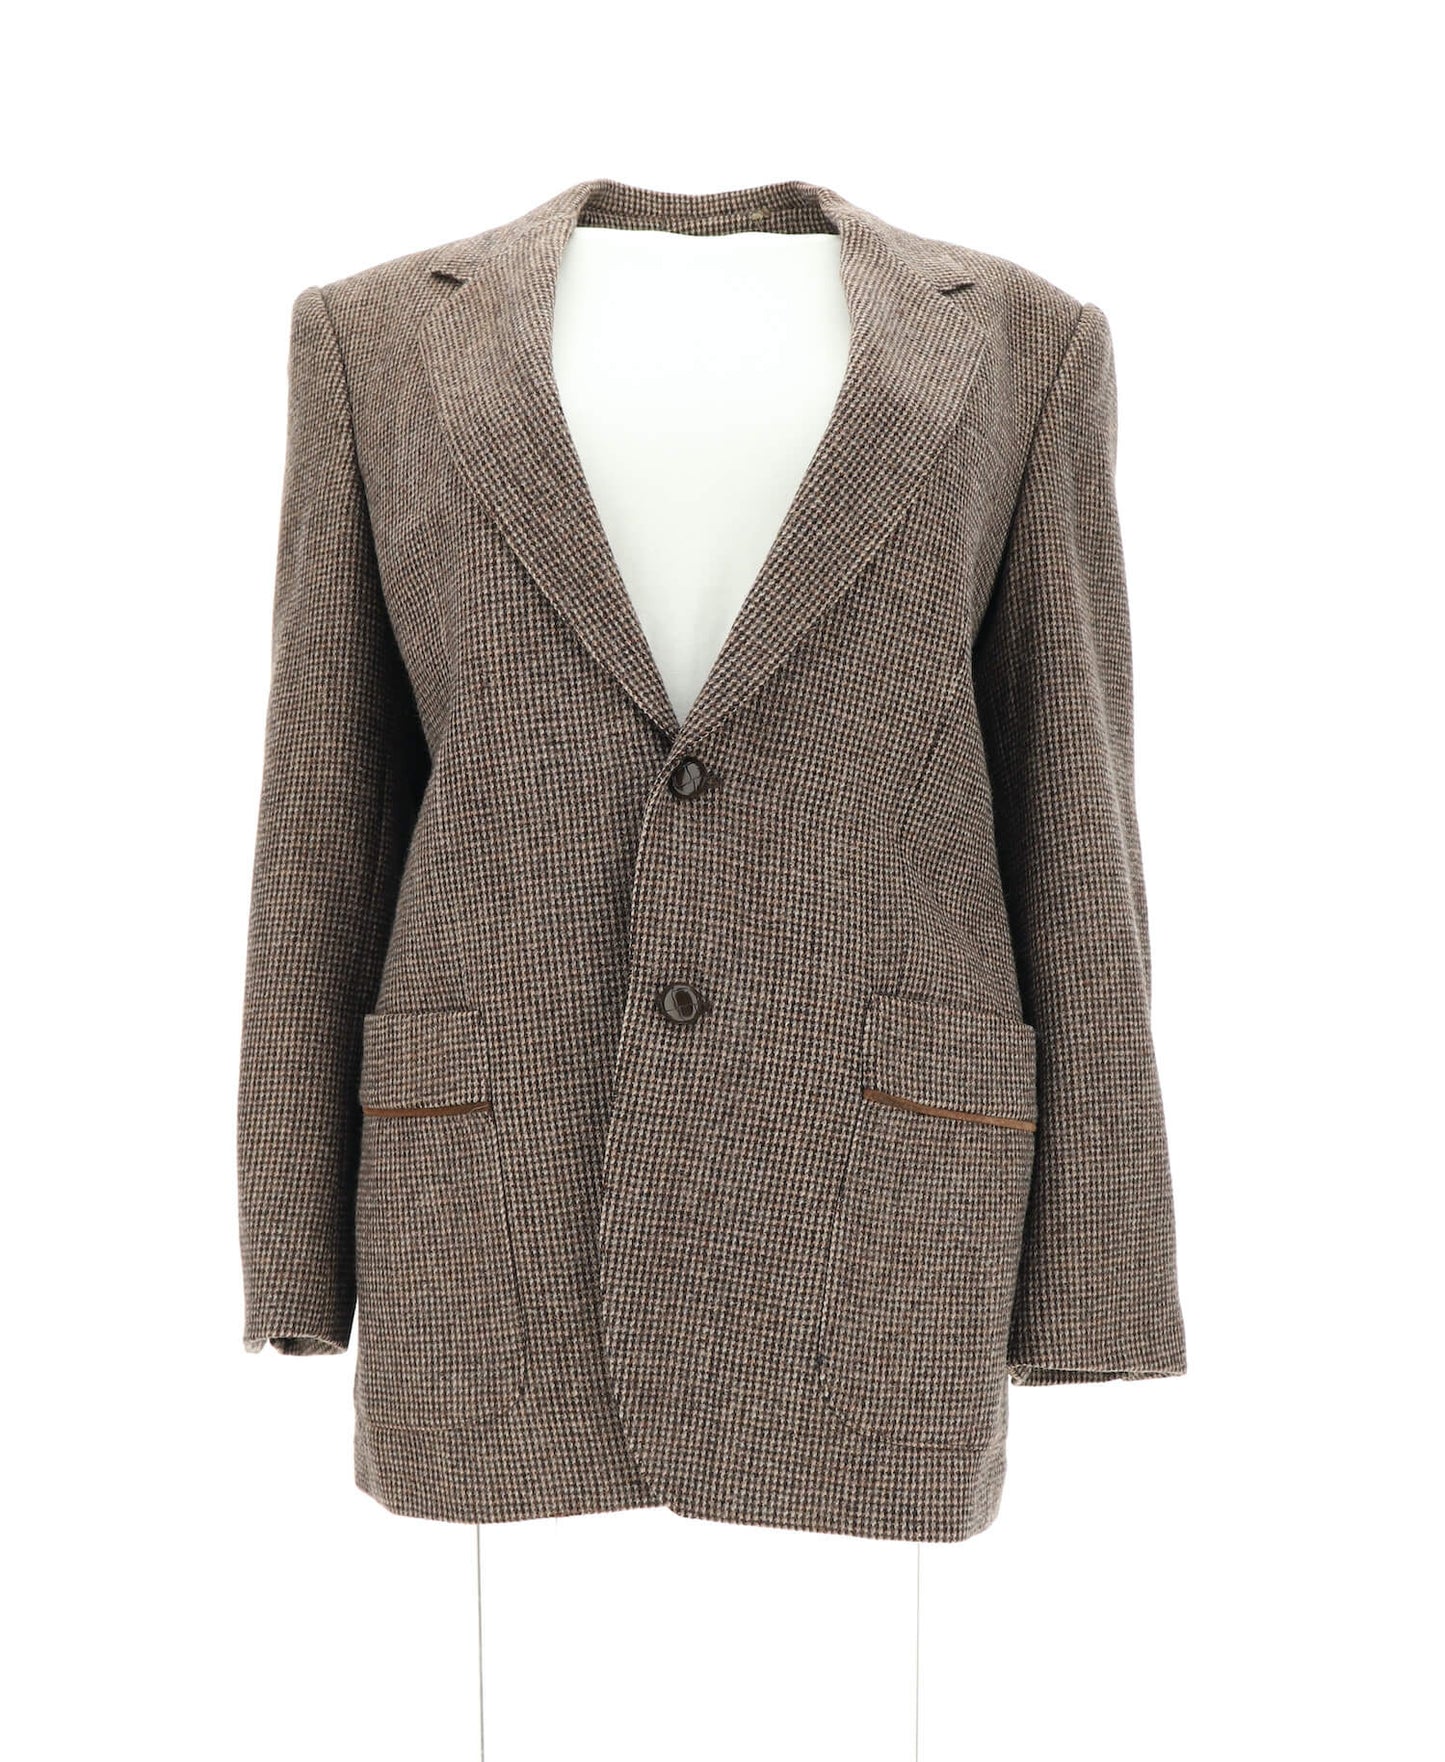 Brown Tweed Check Vintage Blazer